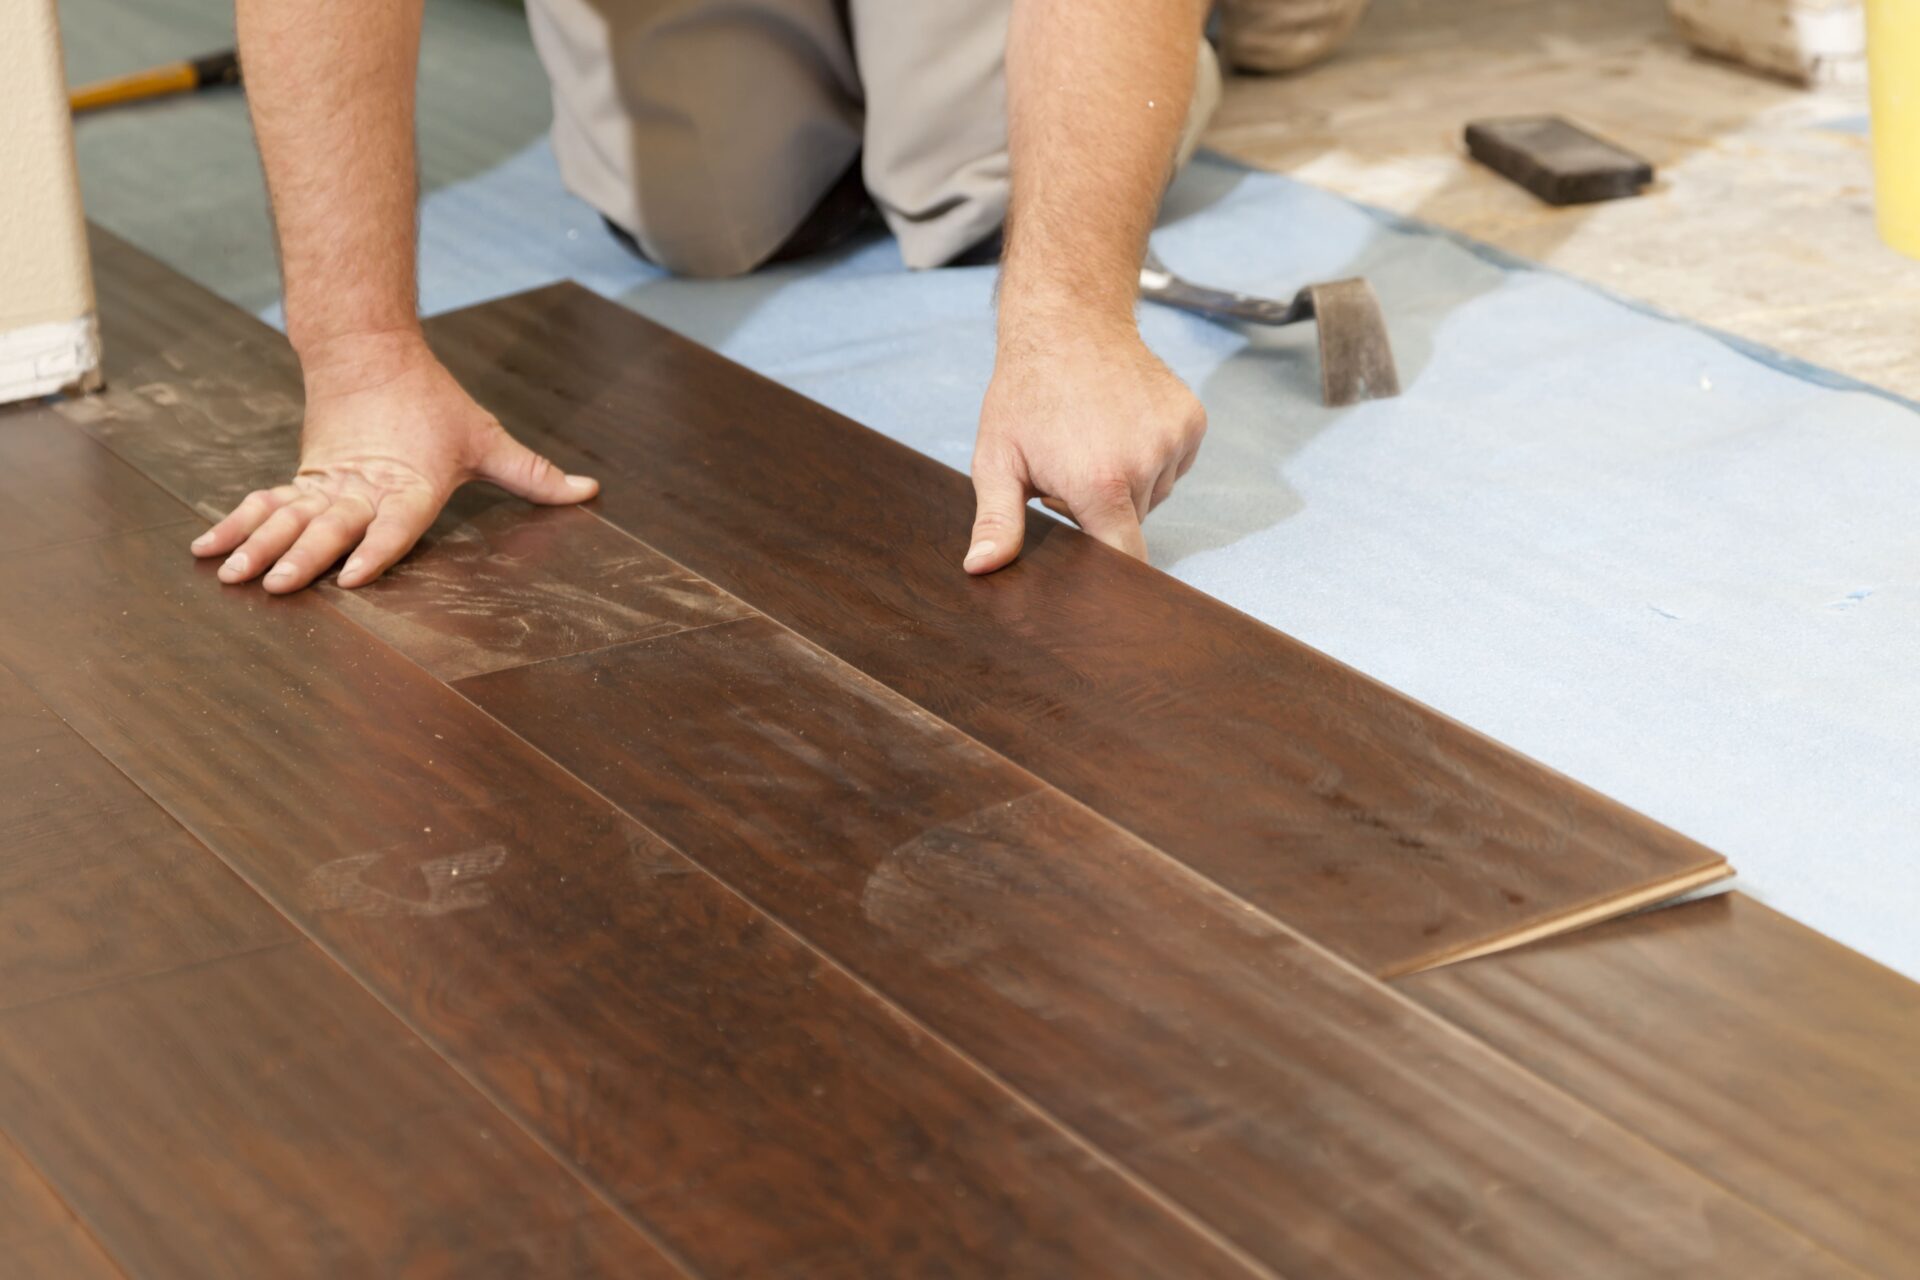 repairing wood flooring